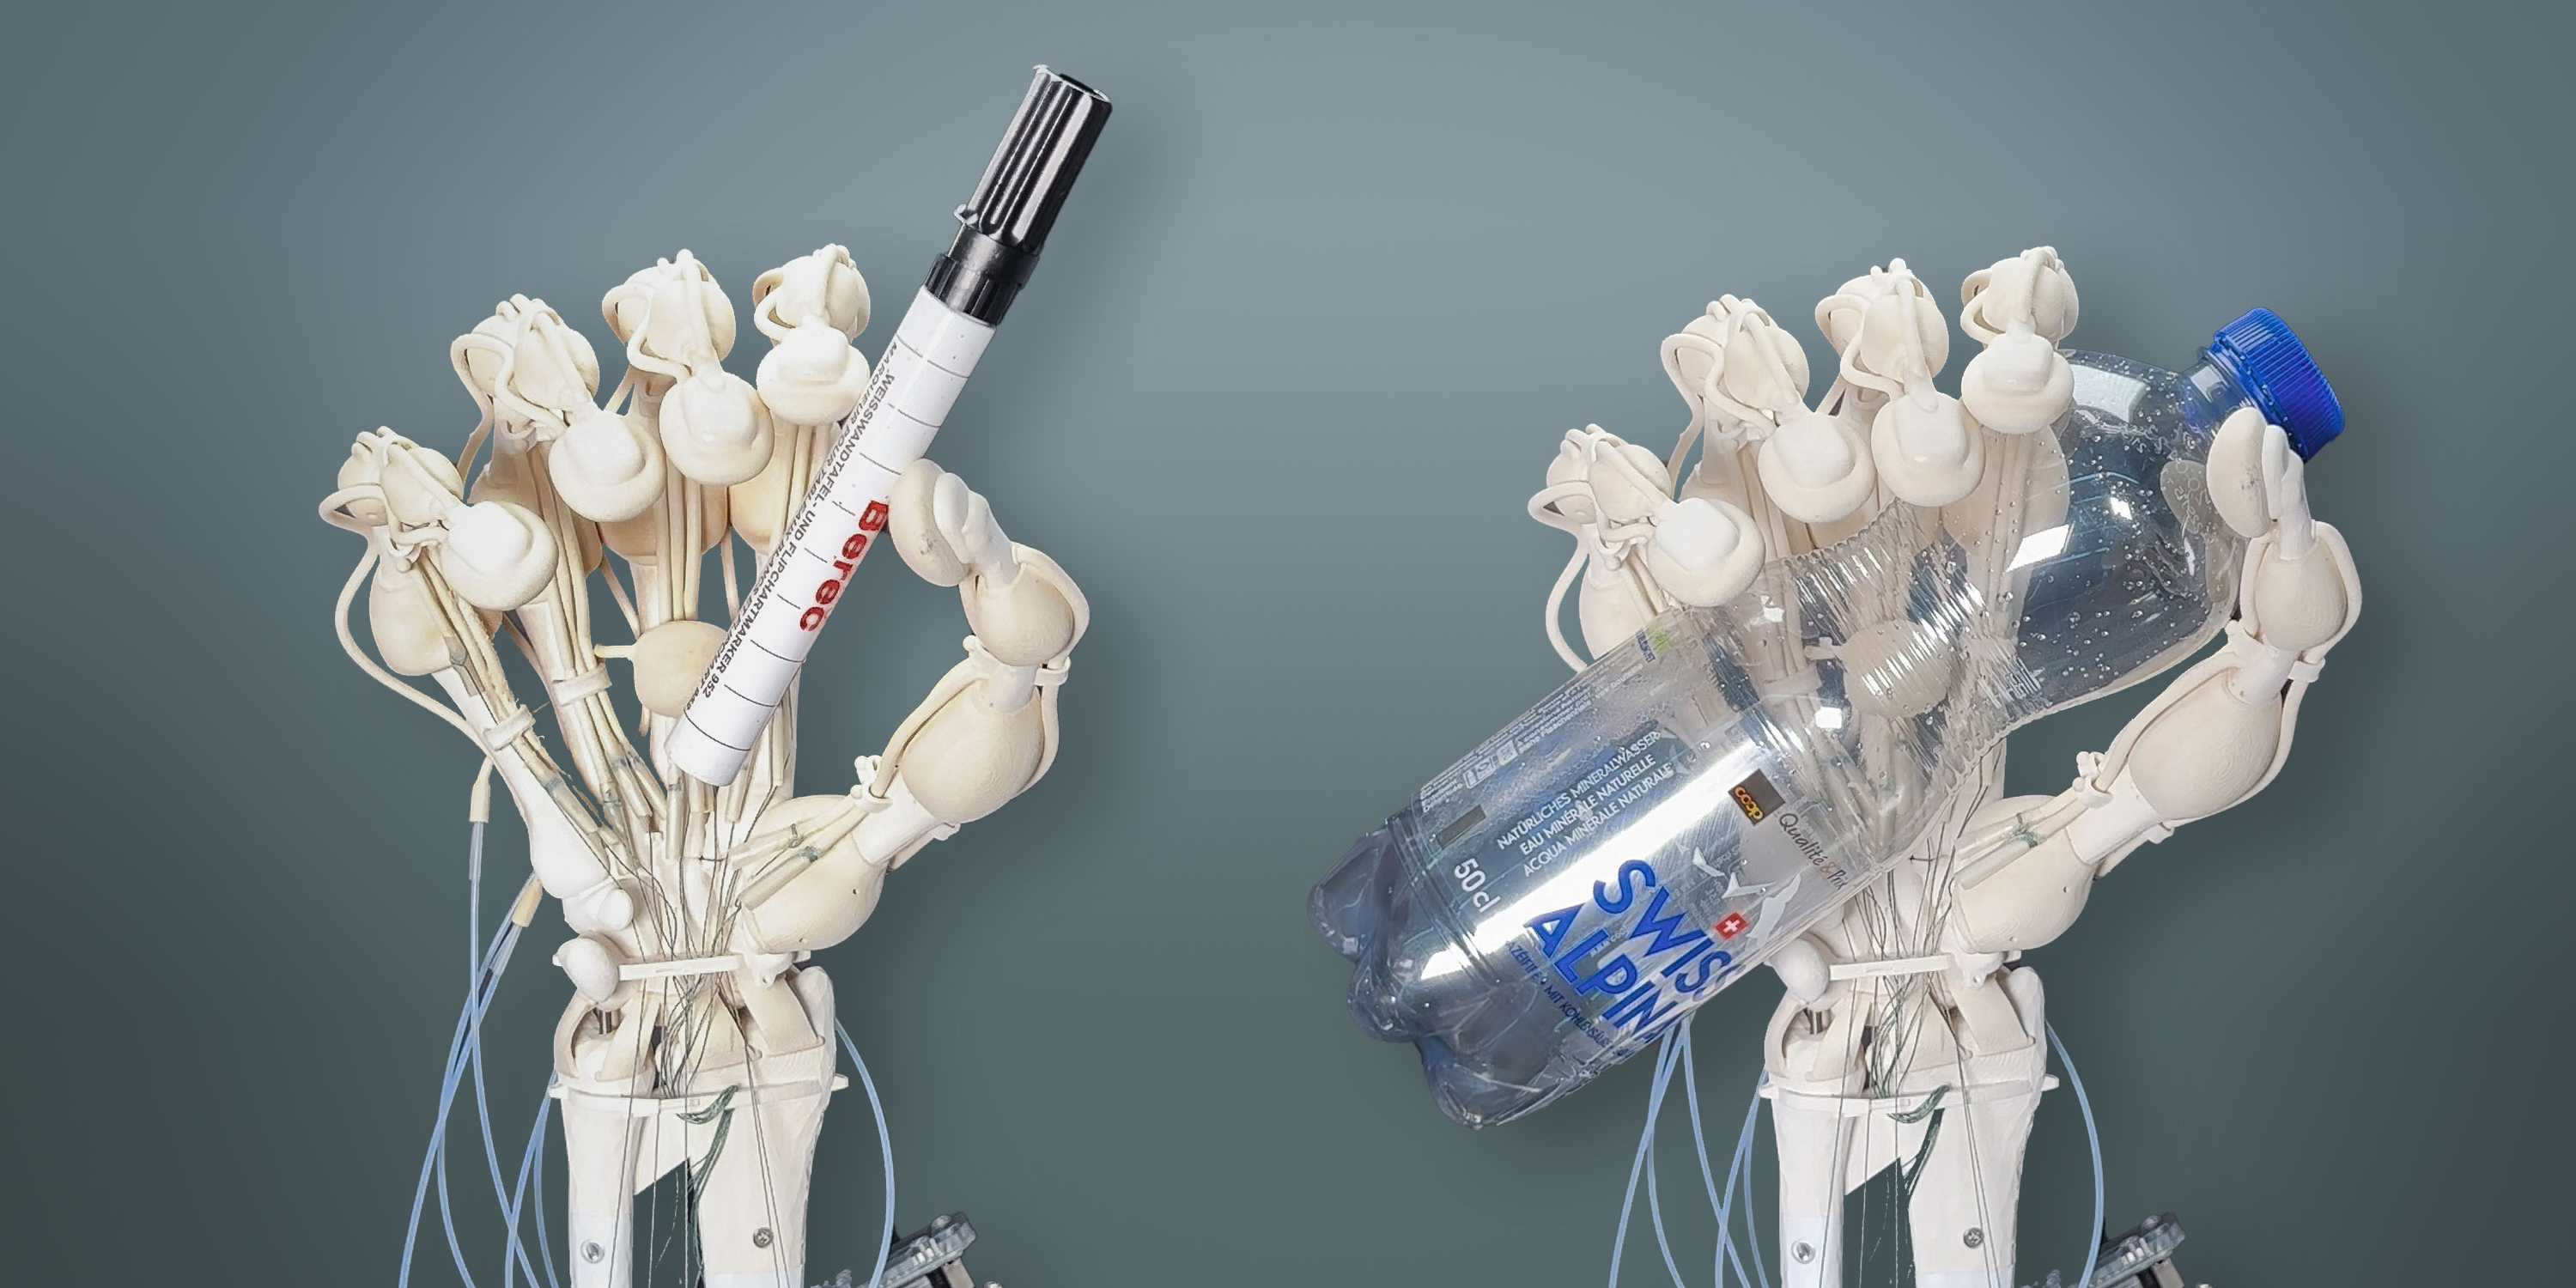 Дослідникам з ETH Zurich вперше вдалося надрукувати роботизовану руку з кістками, зв’язками та сухожиллями